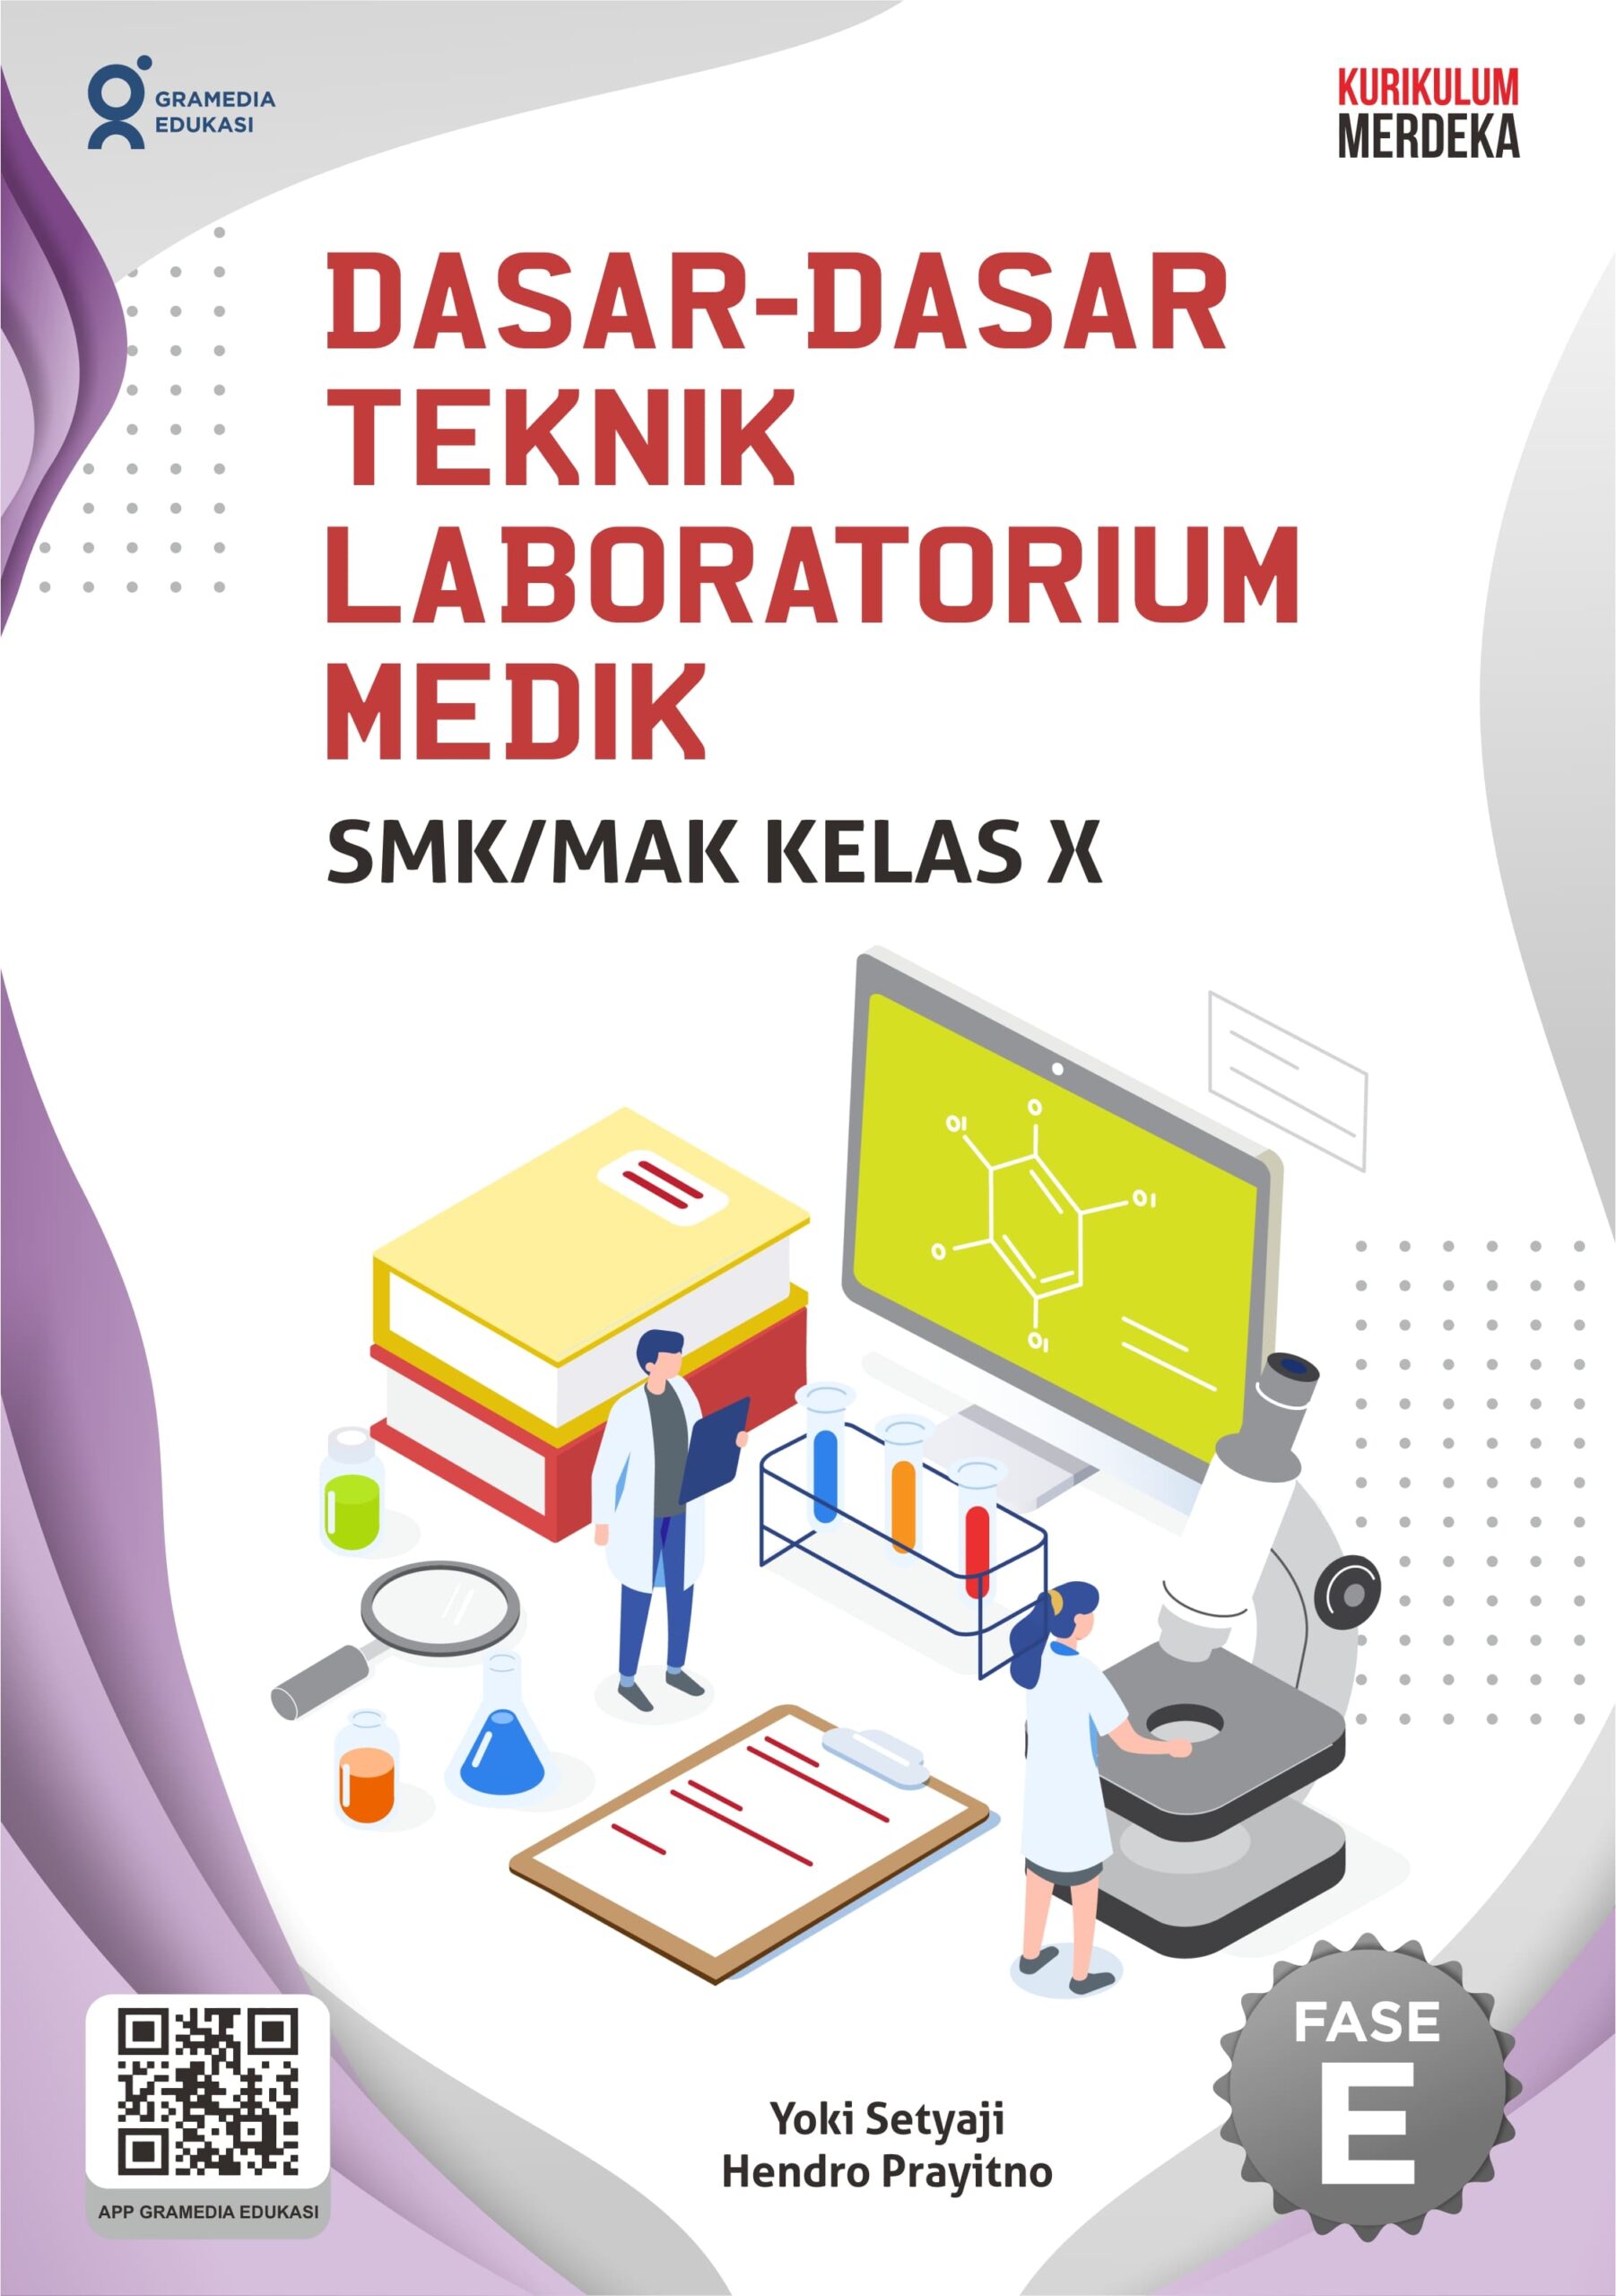 Dasar-dasar teknik laboratorium medik SMK/MAK kelas X